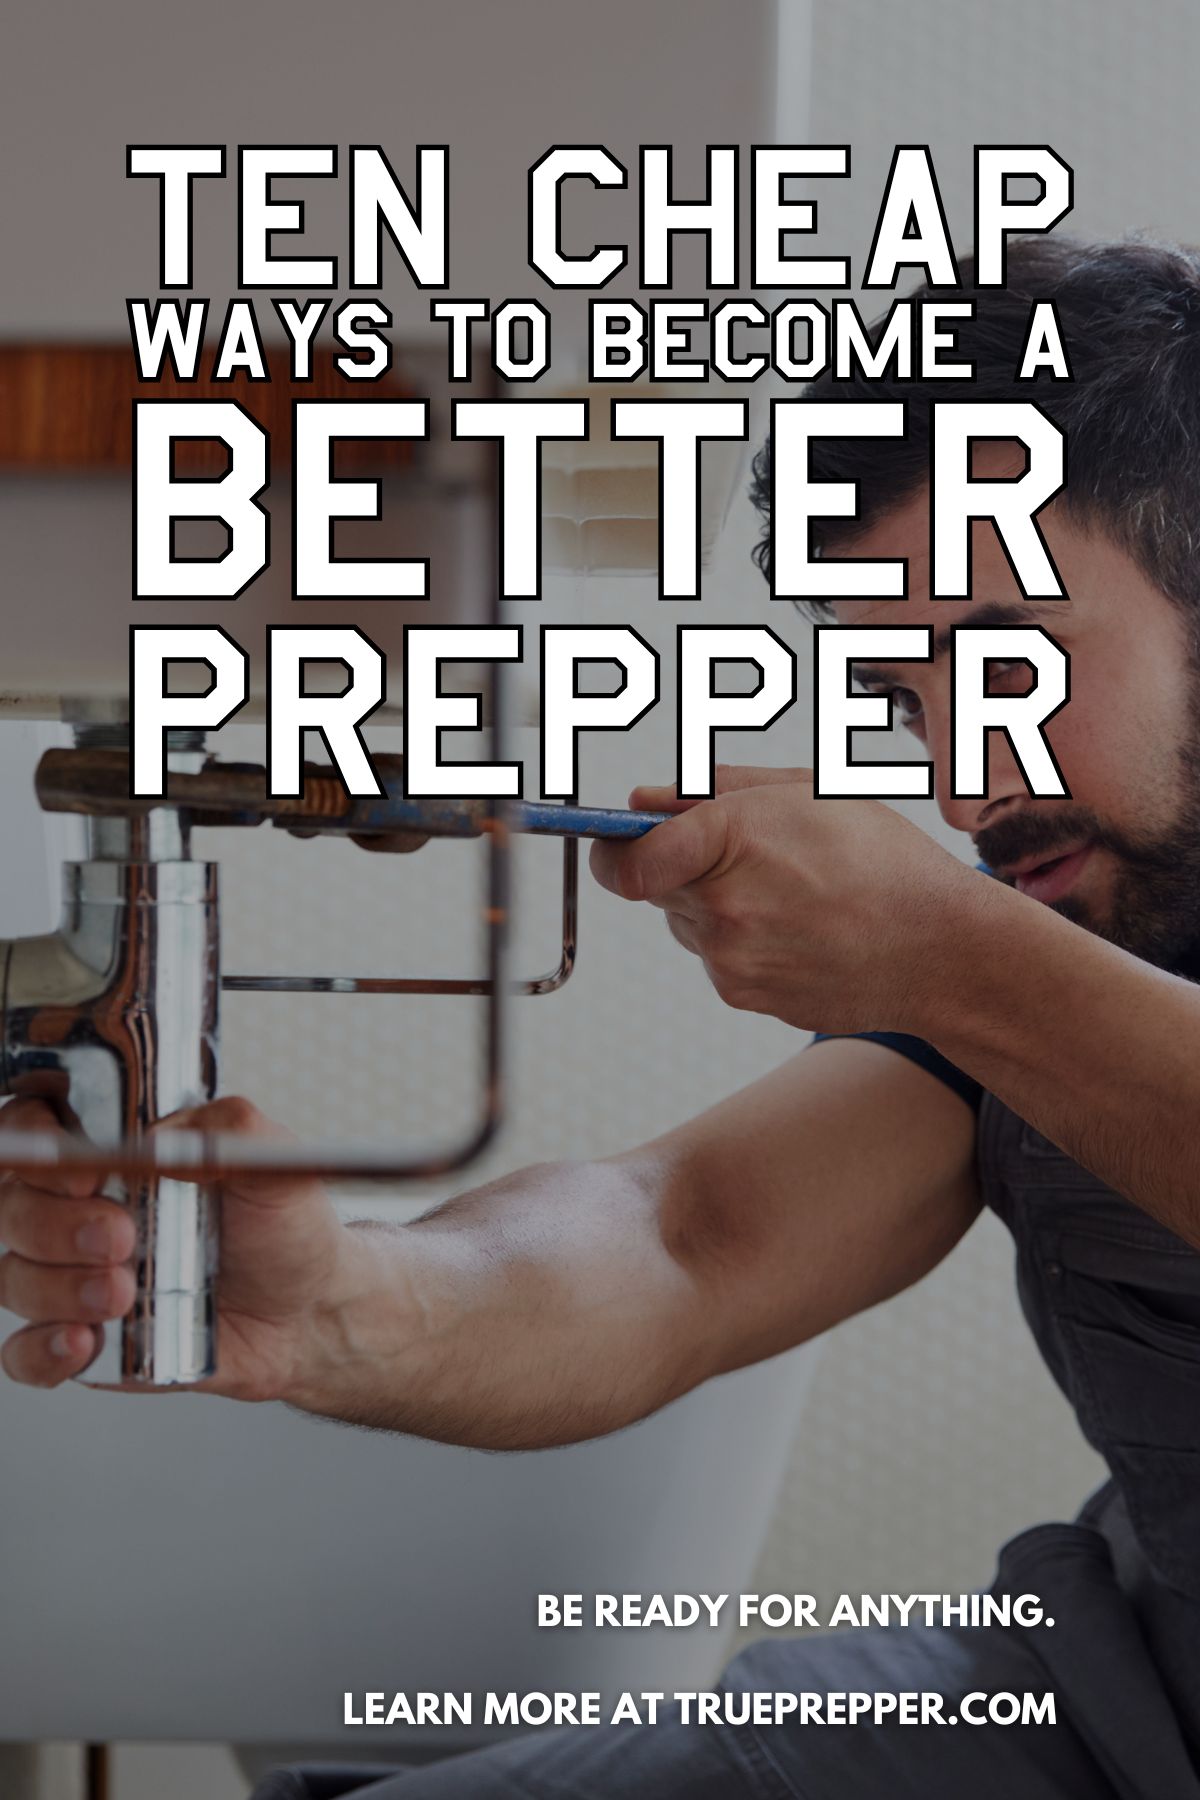 Ten Cheap Ways to Become a Better Prepper